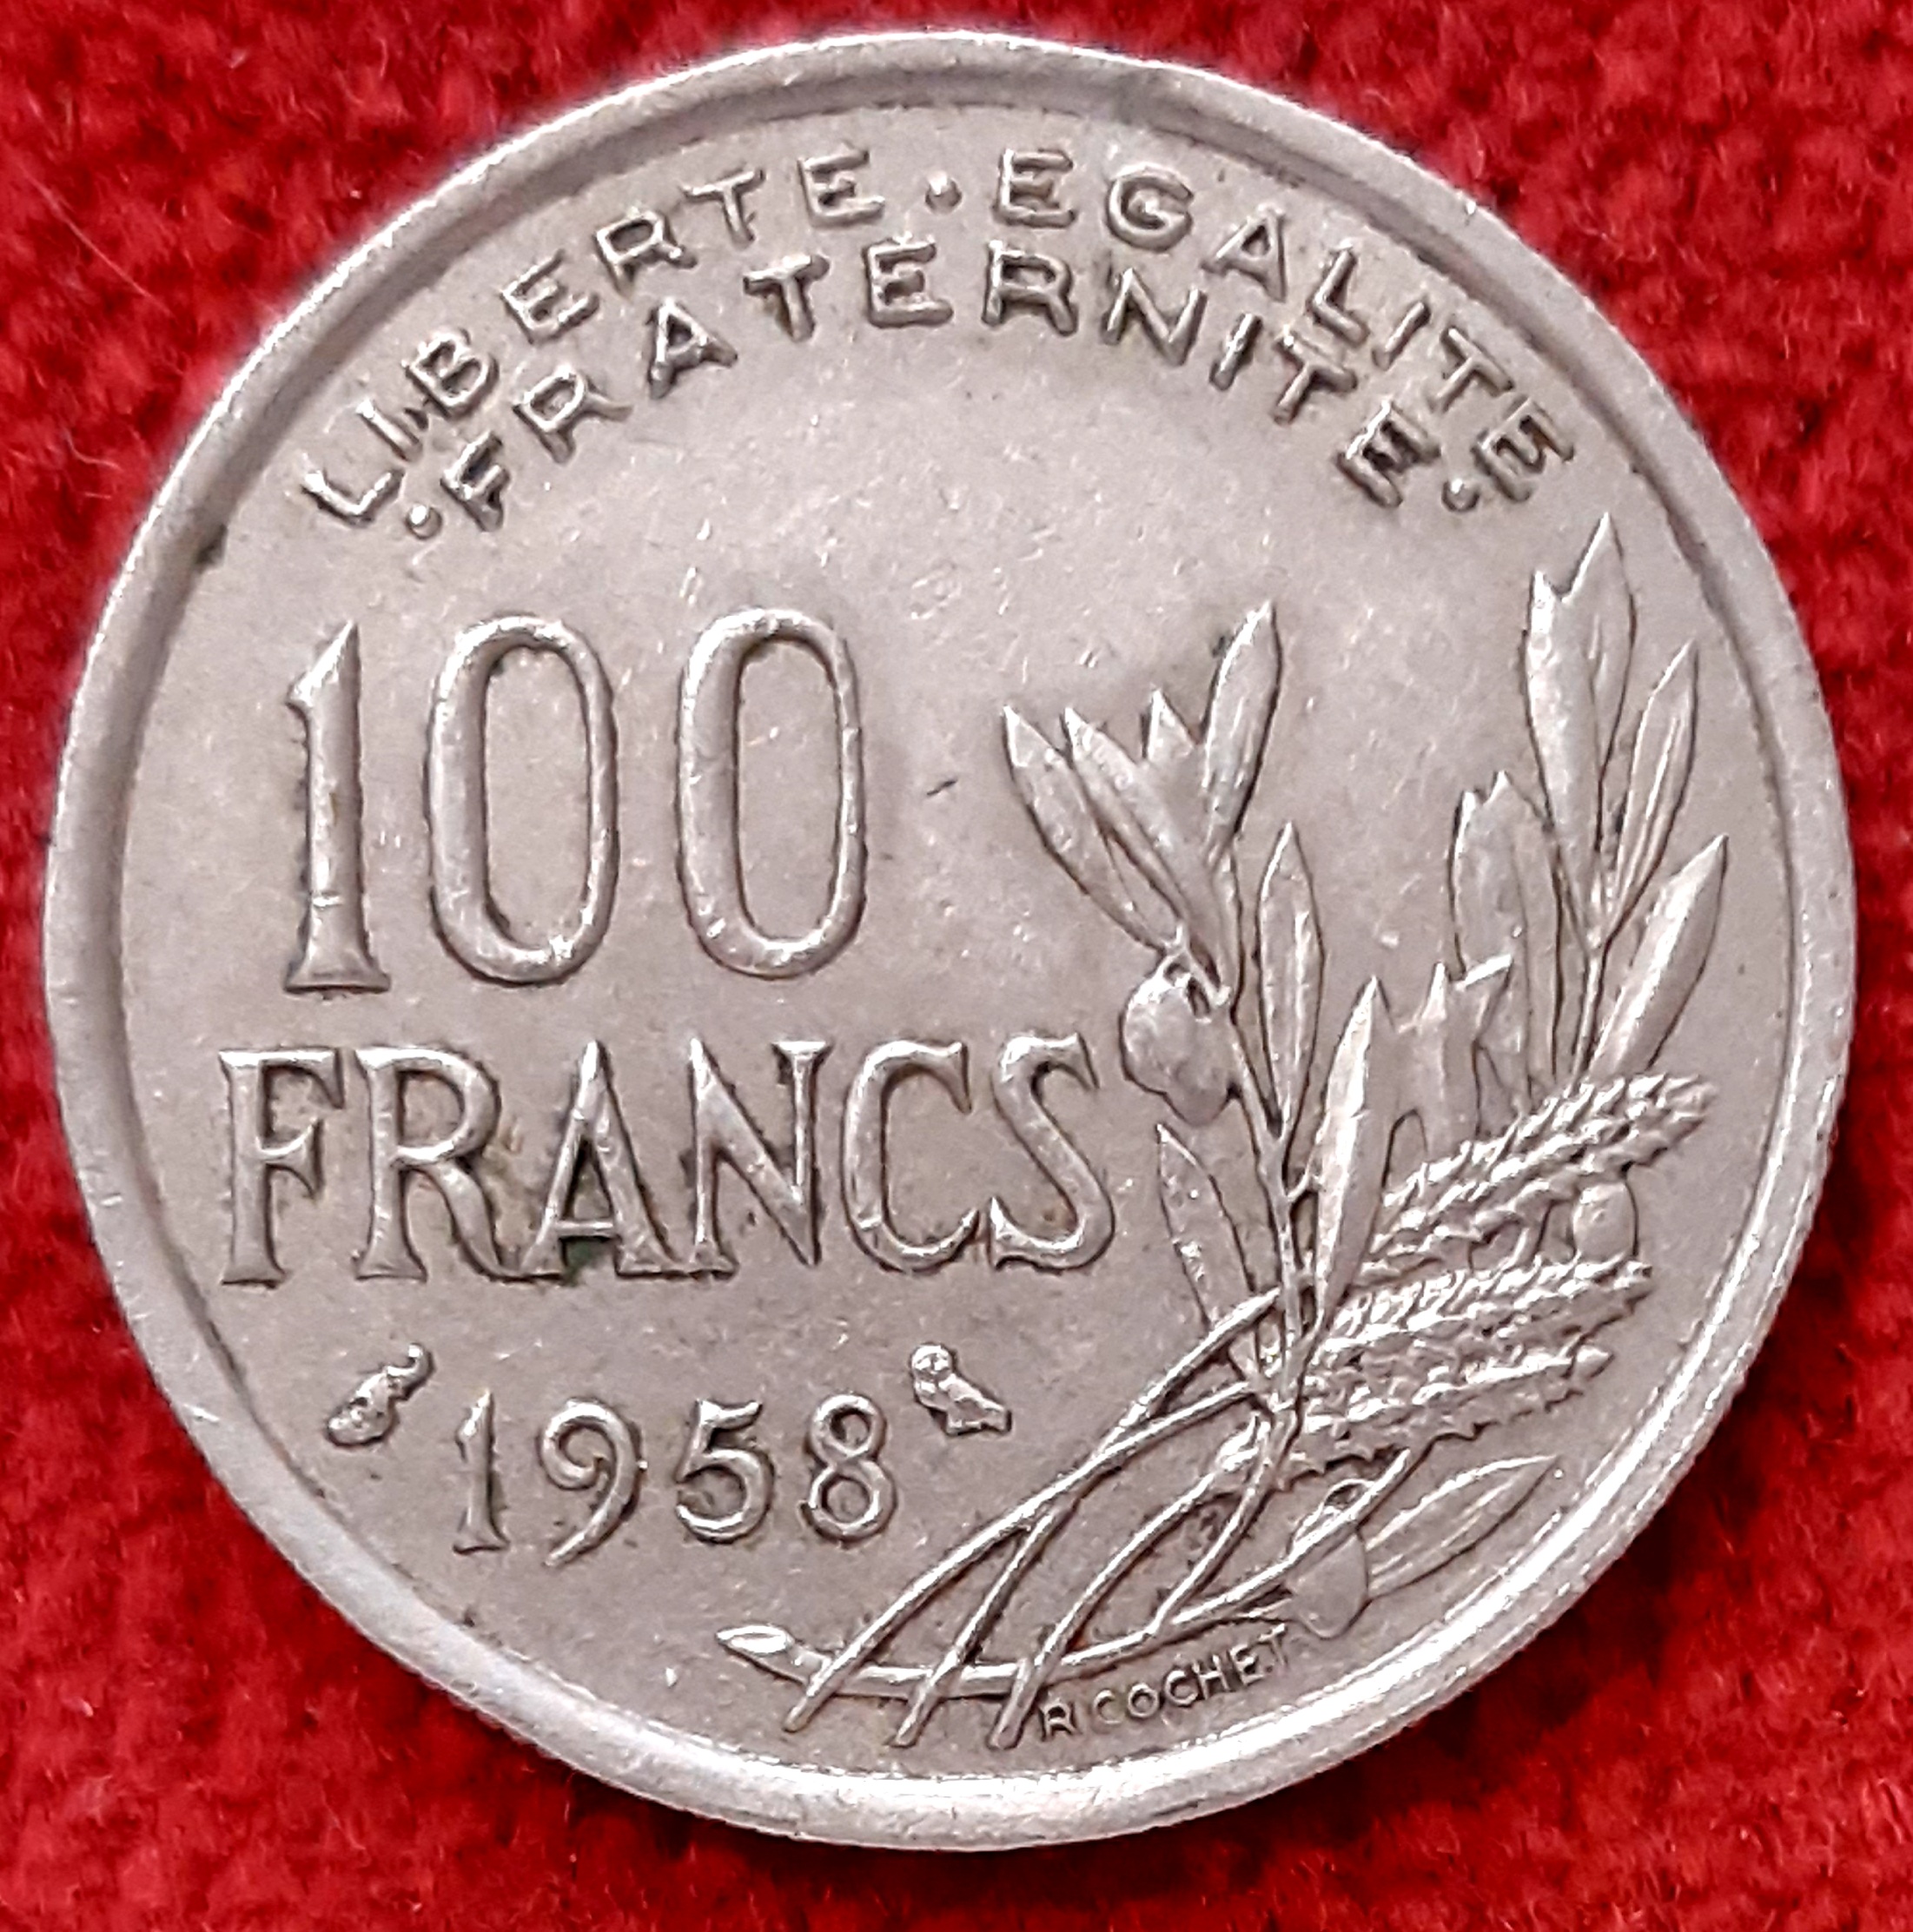 100 Francs Cochet 1958 Chouette